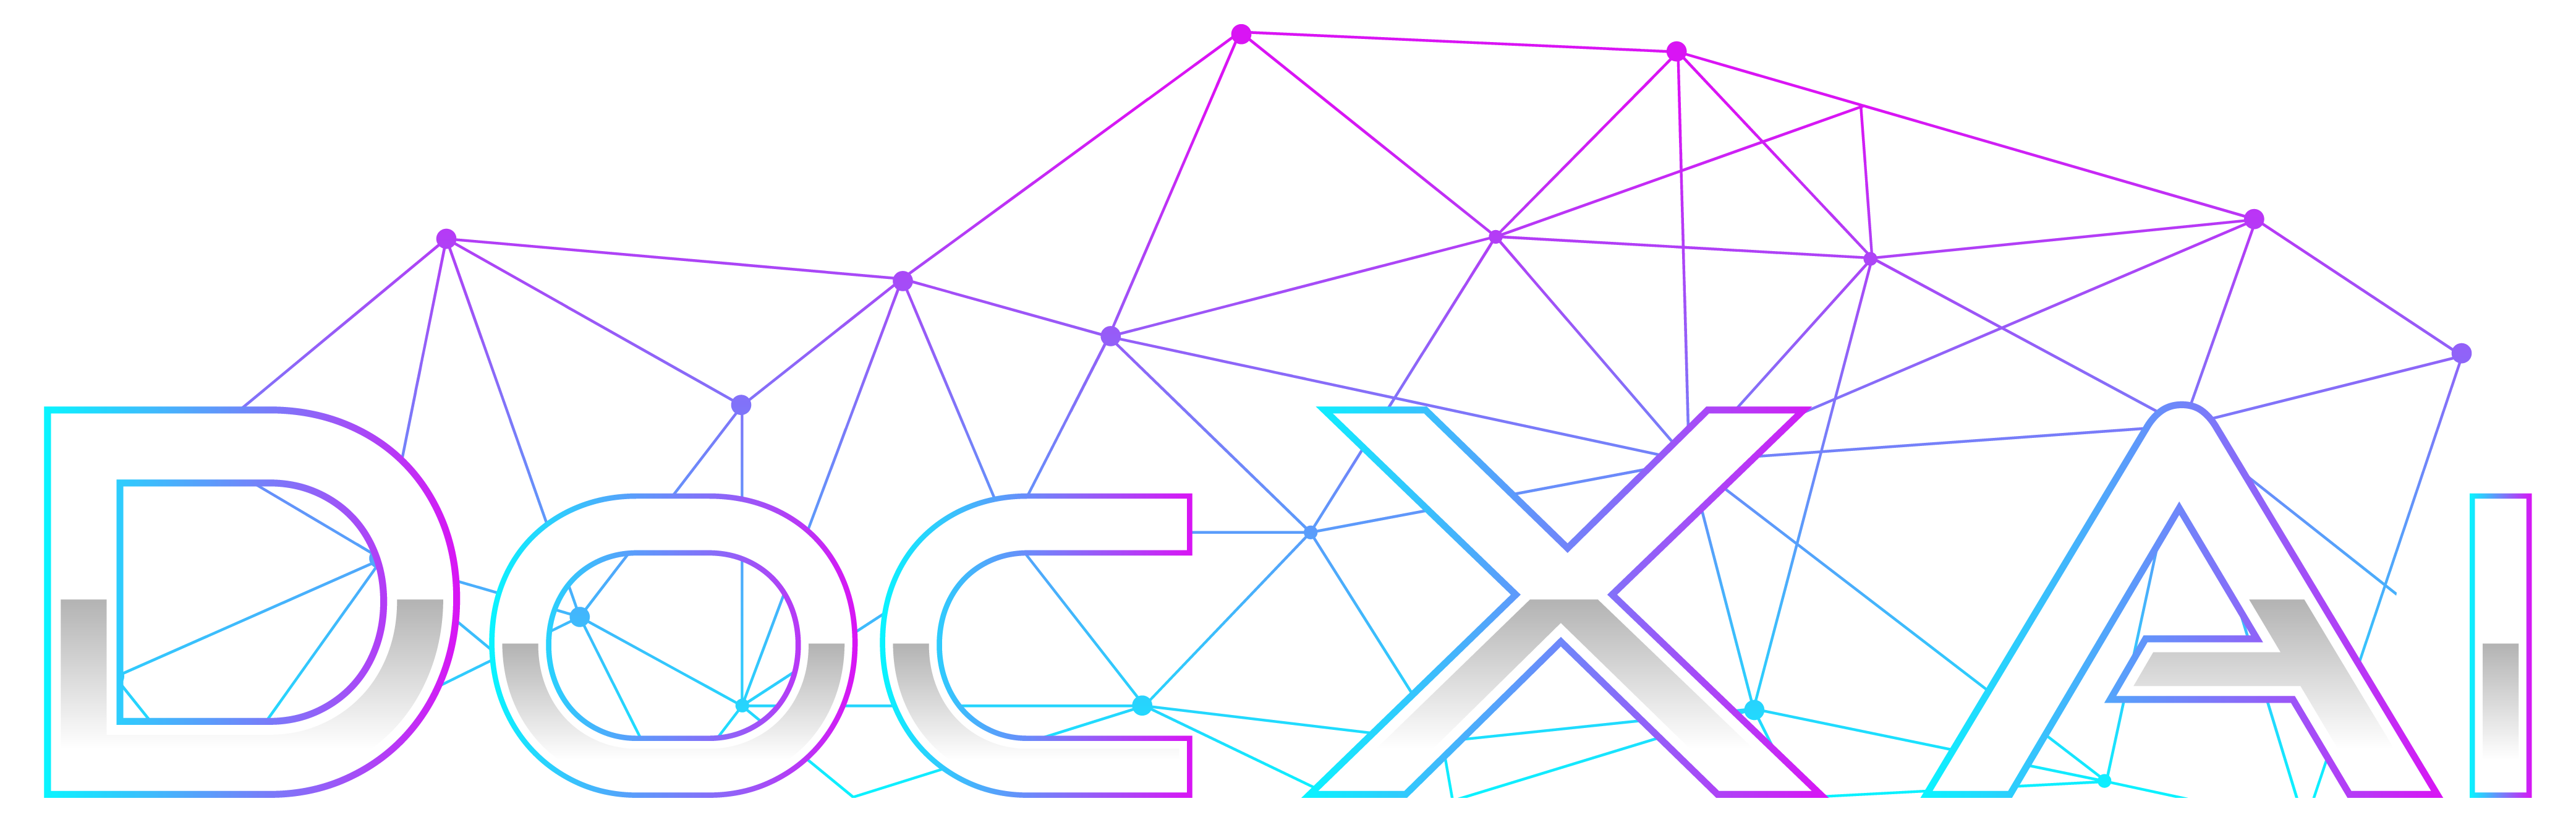 Docxai_Logo_FF-01